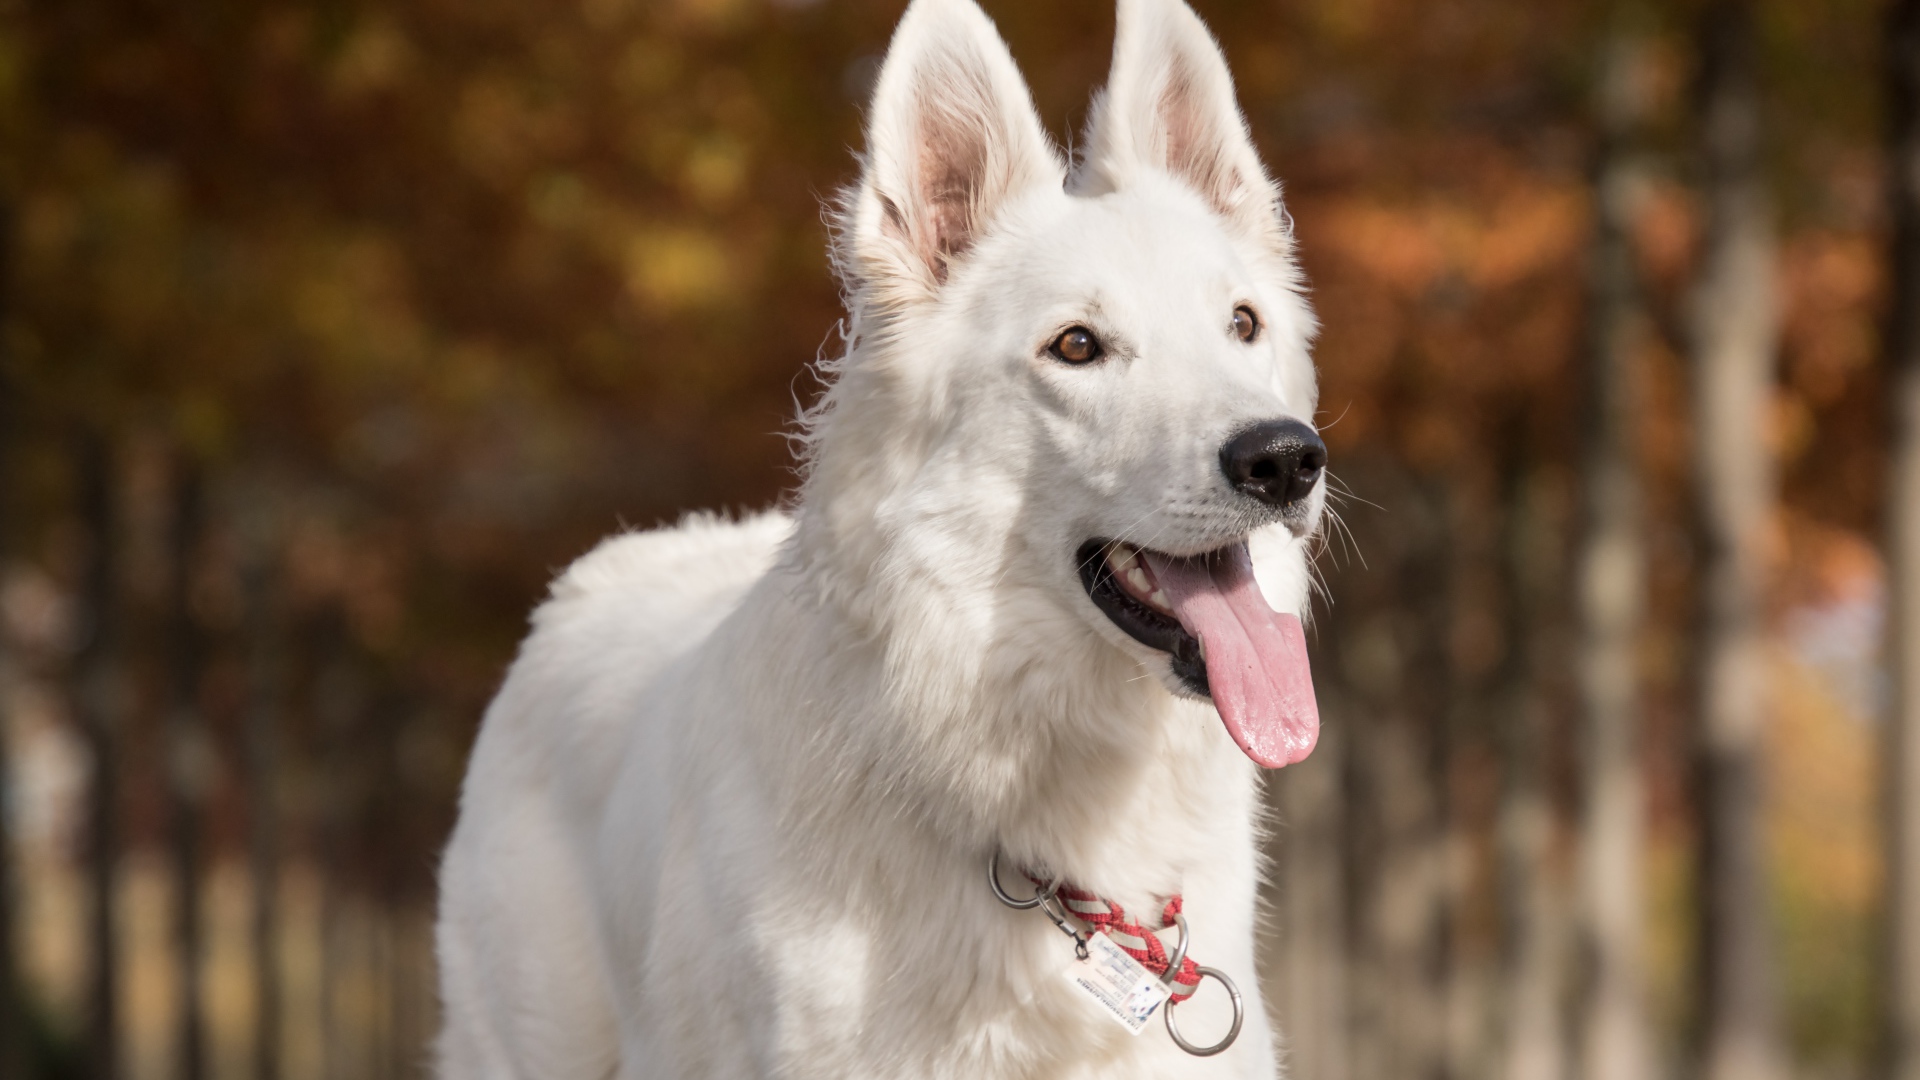 White shepherd dog with protruding tongue